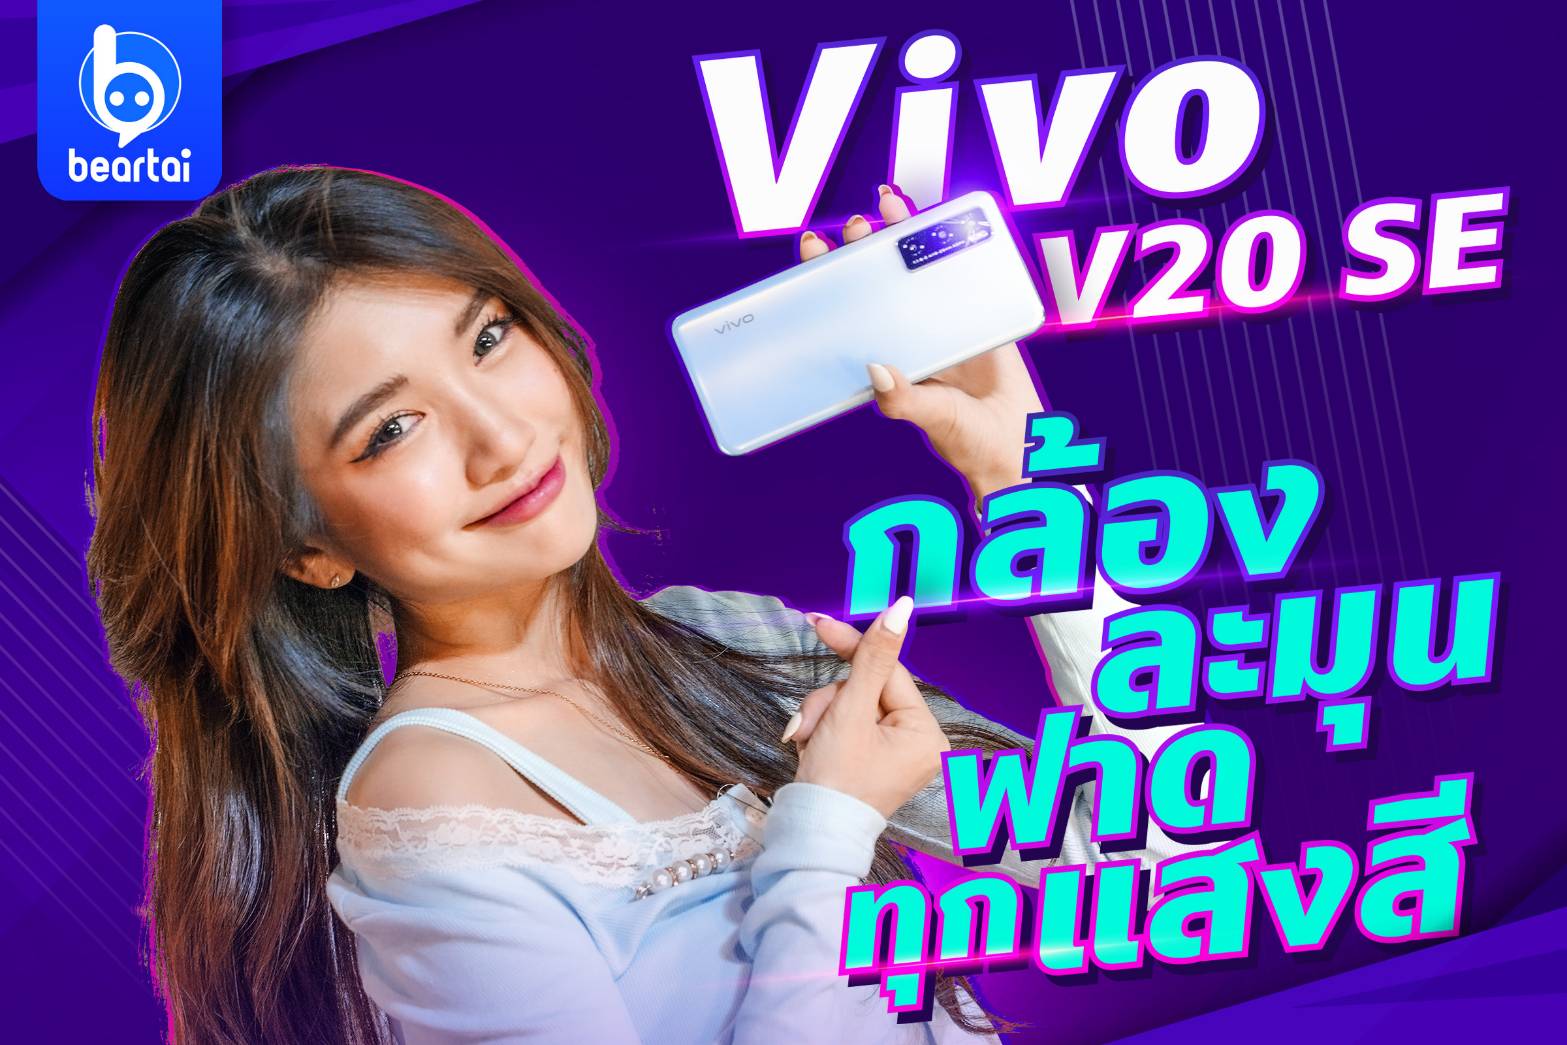 Vivo V20 SE มือถือราคาไม่ถึง 9,000 บาท ถ่ายรูปงานเทศกาลได้ดีแค่ไหน มาดูกัน!